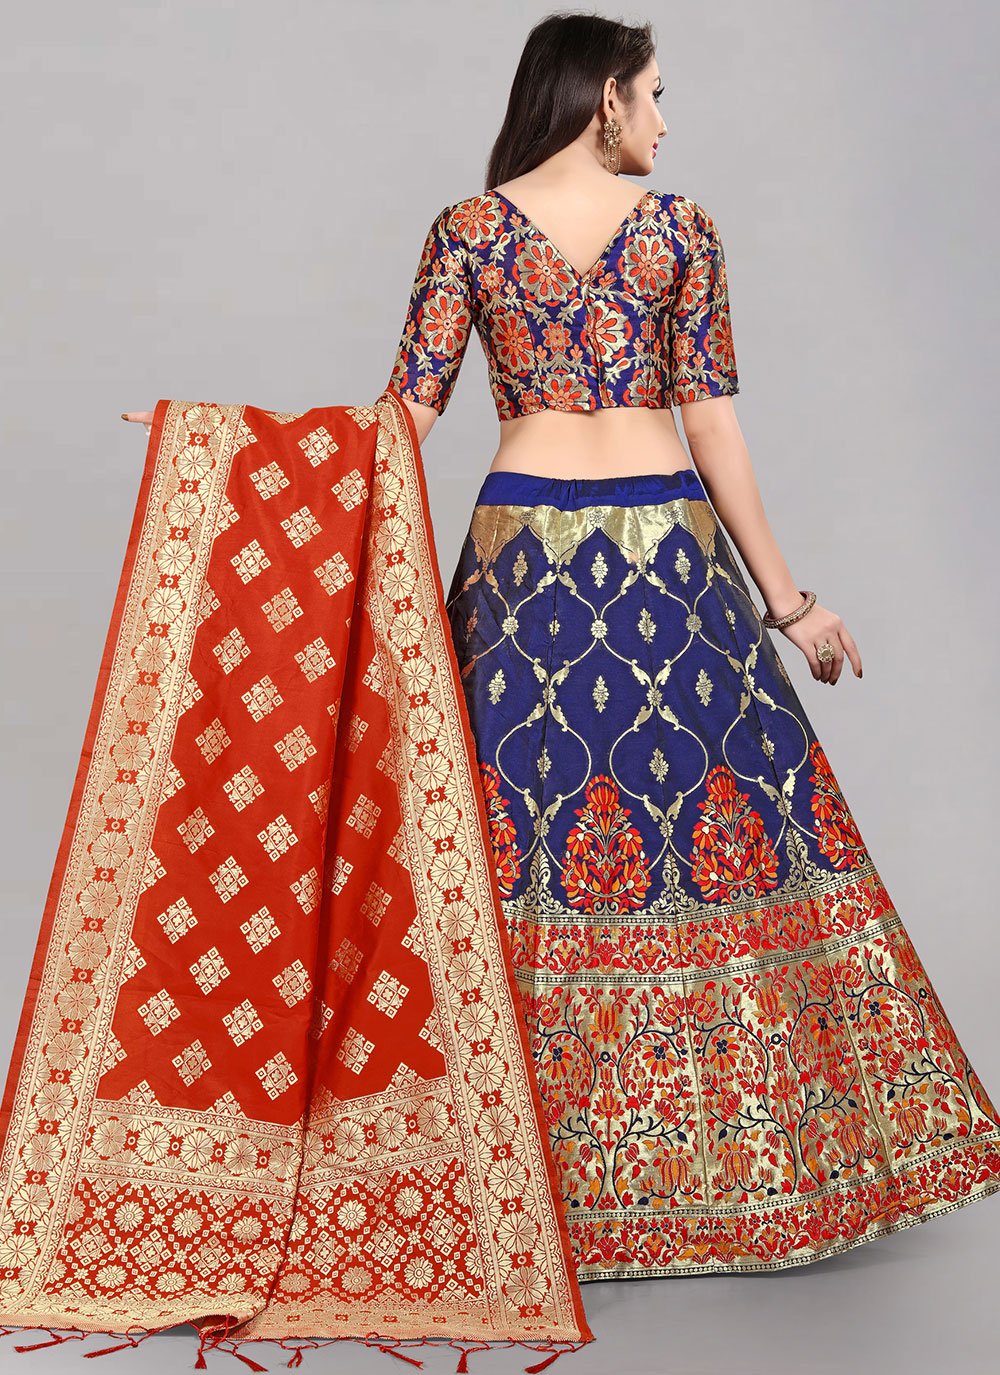 Lehenga Choli Banarasi Silk Jacquard Blue Red Jacquard Work Lehenga Choli